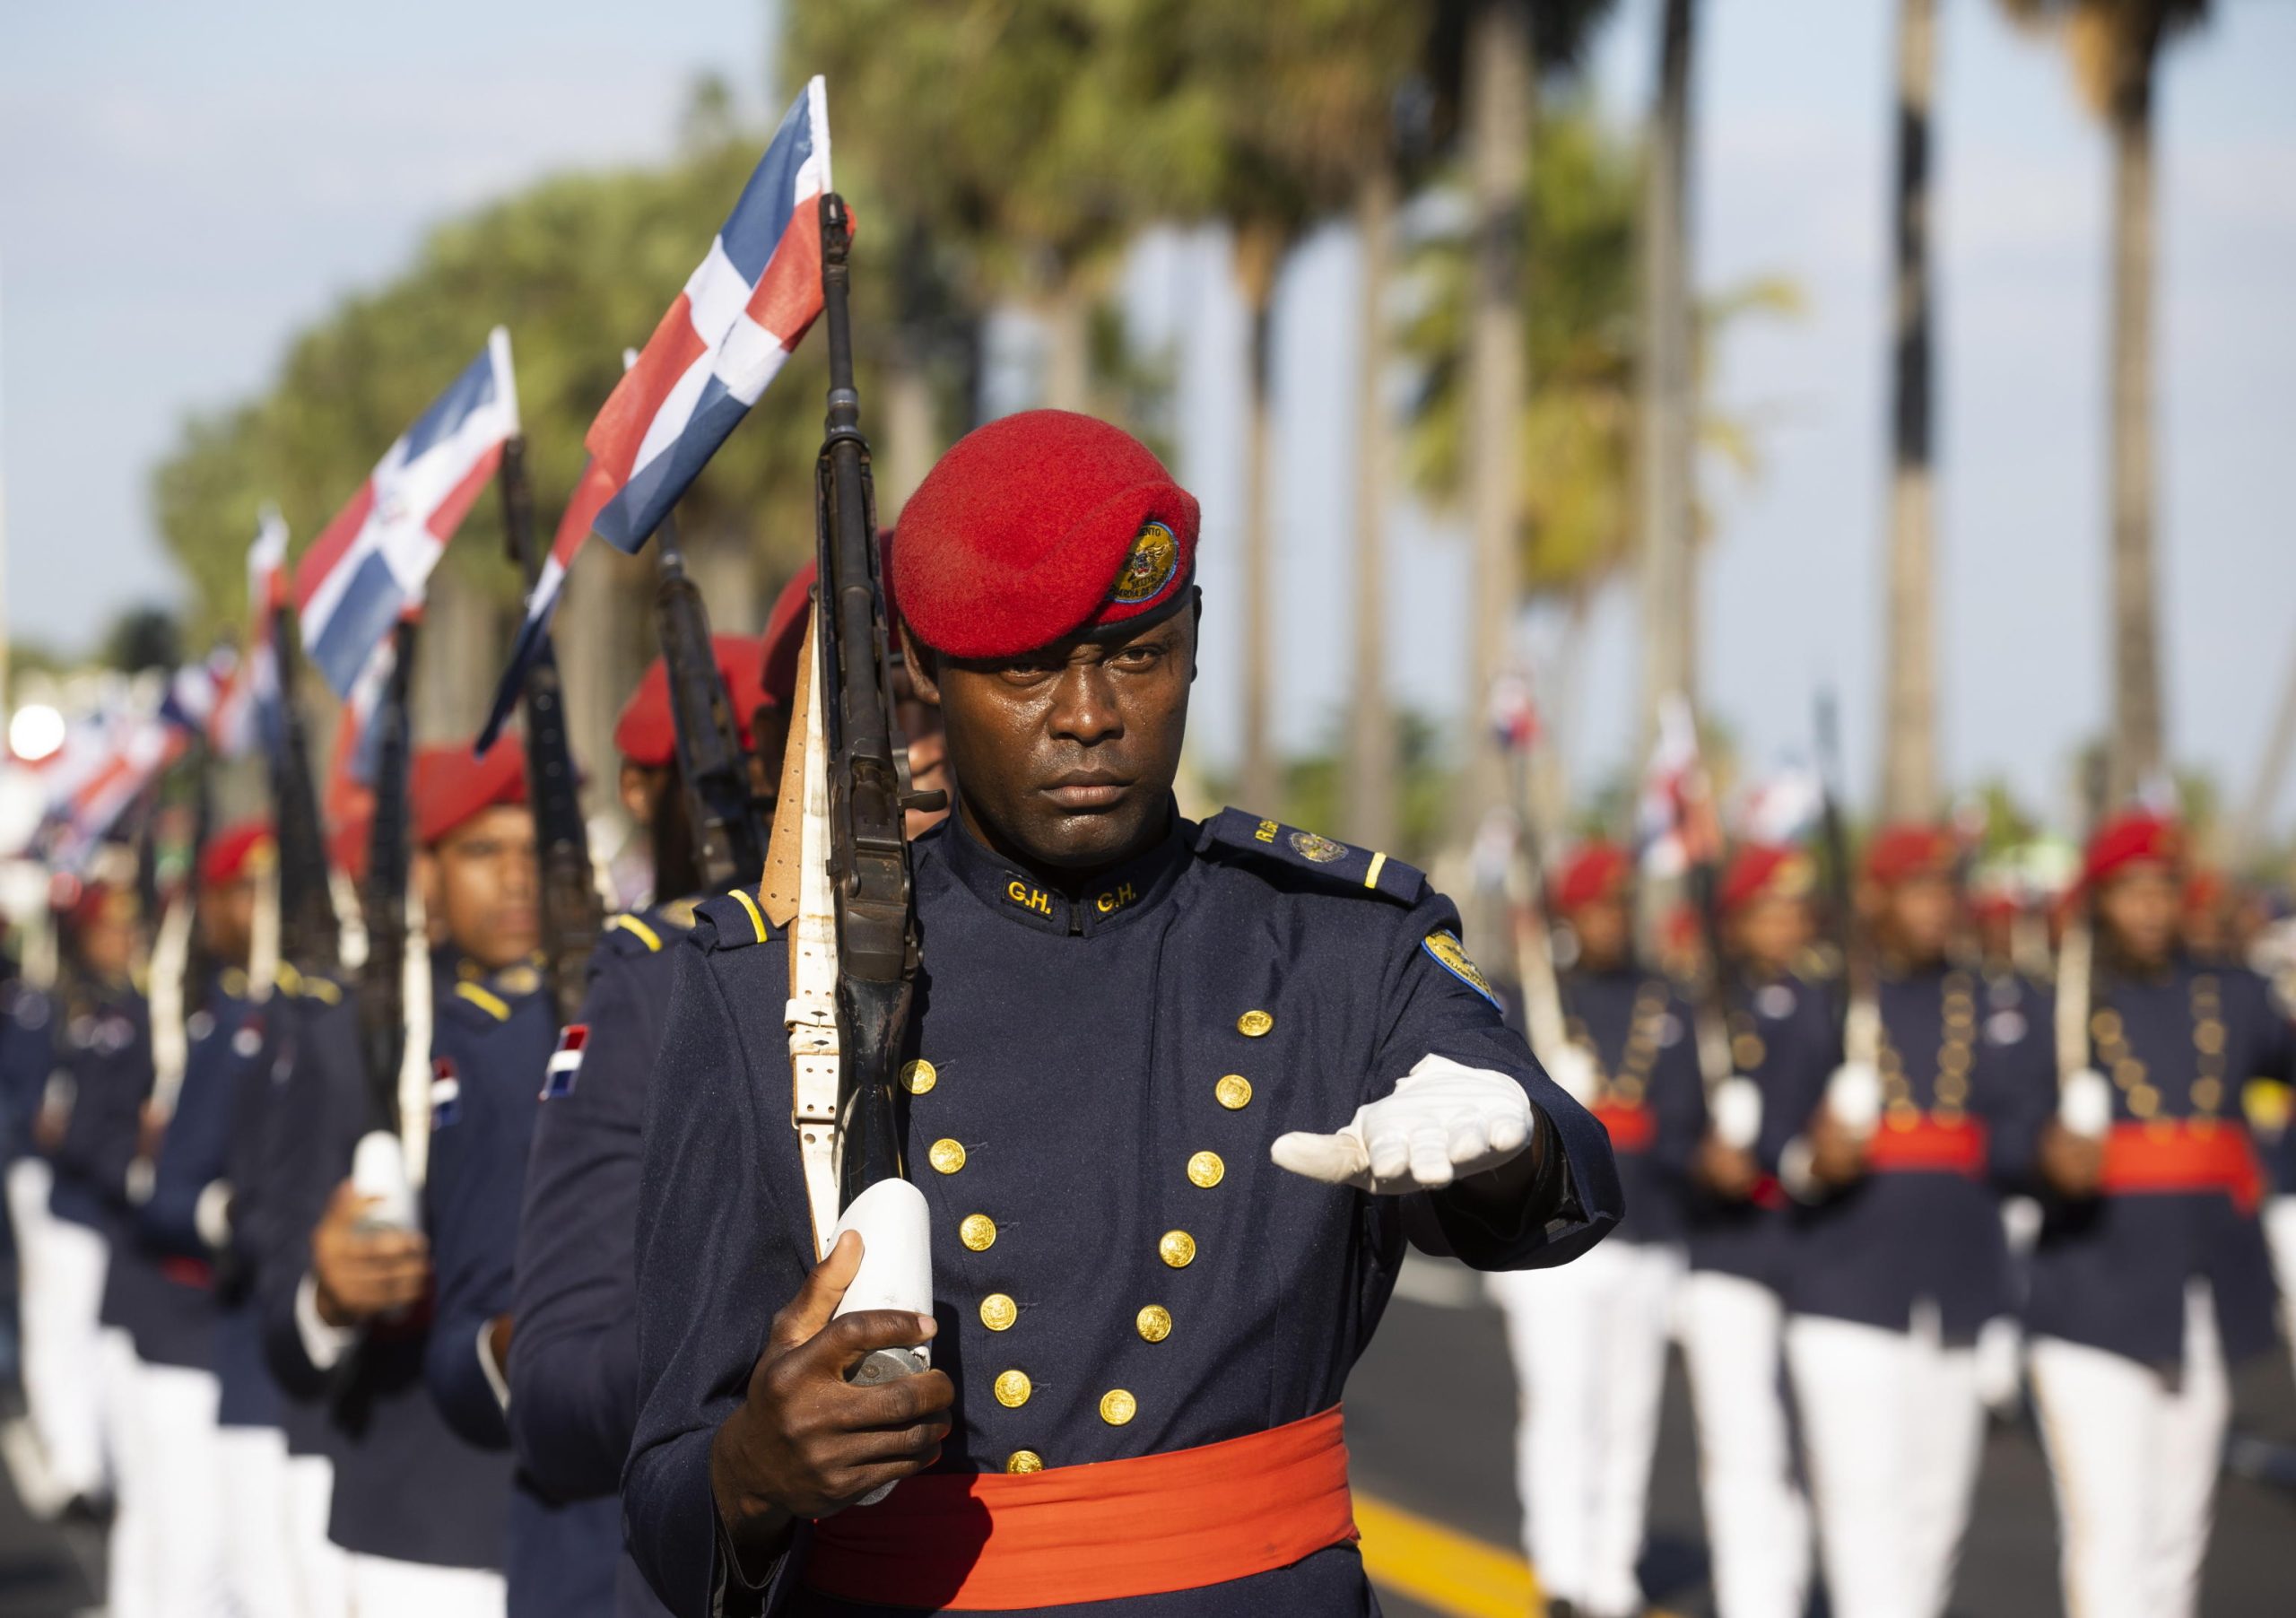 Membri delle forze armate sfilano alla parata militare portando la bandiera della Repubblica Domenicana